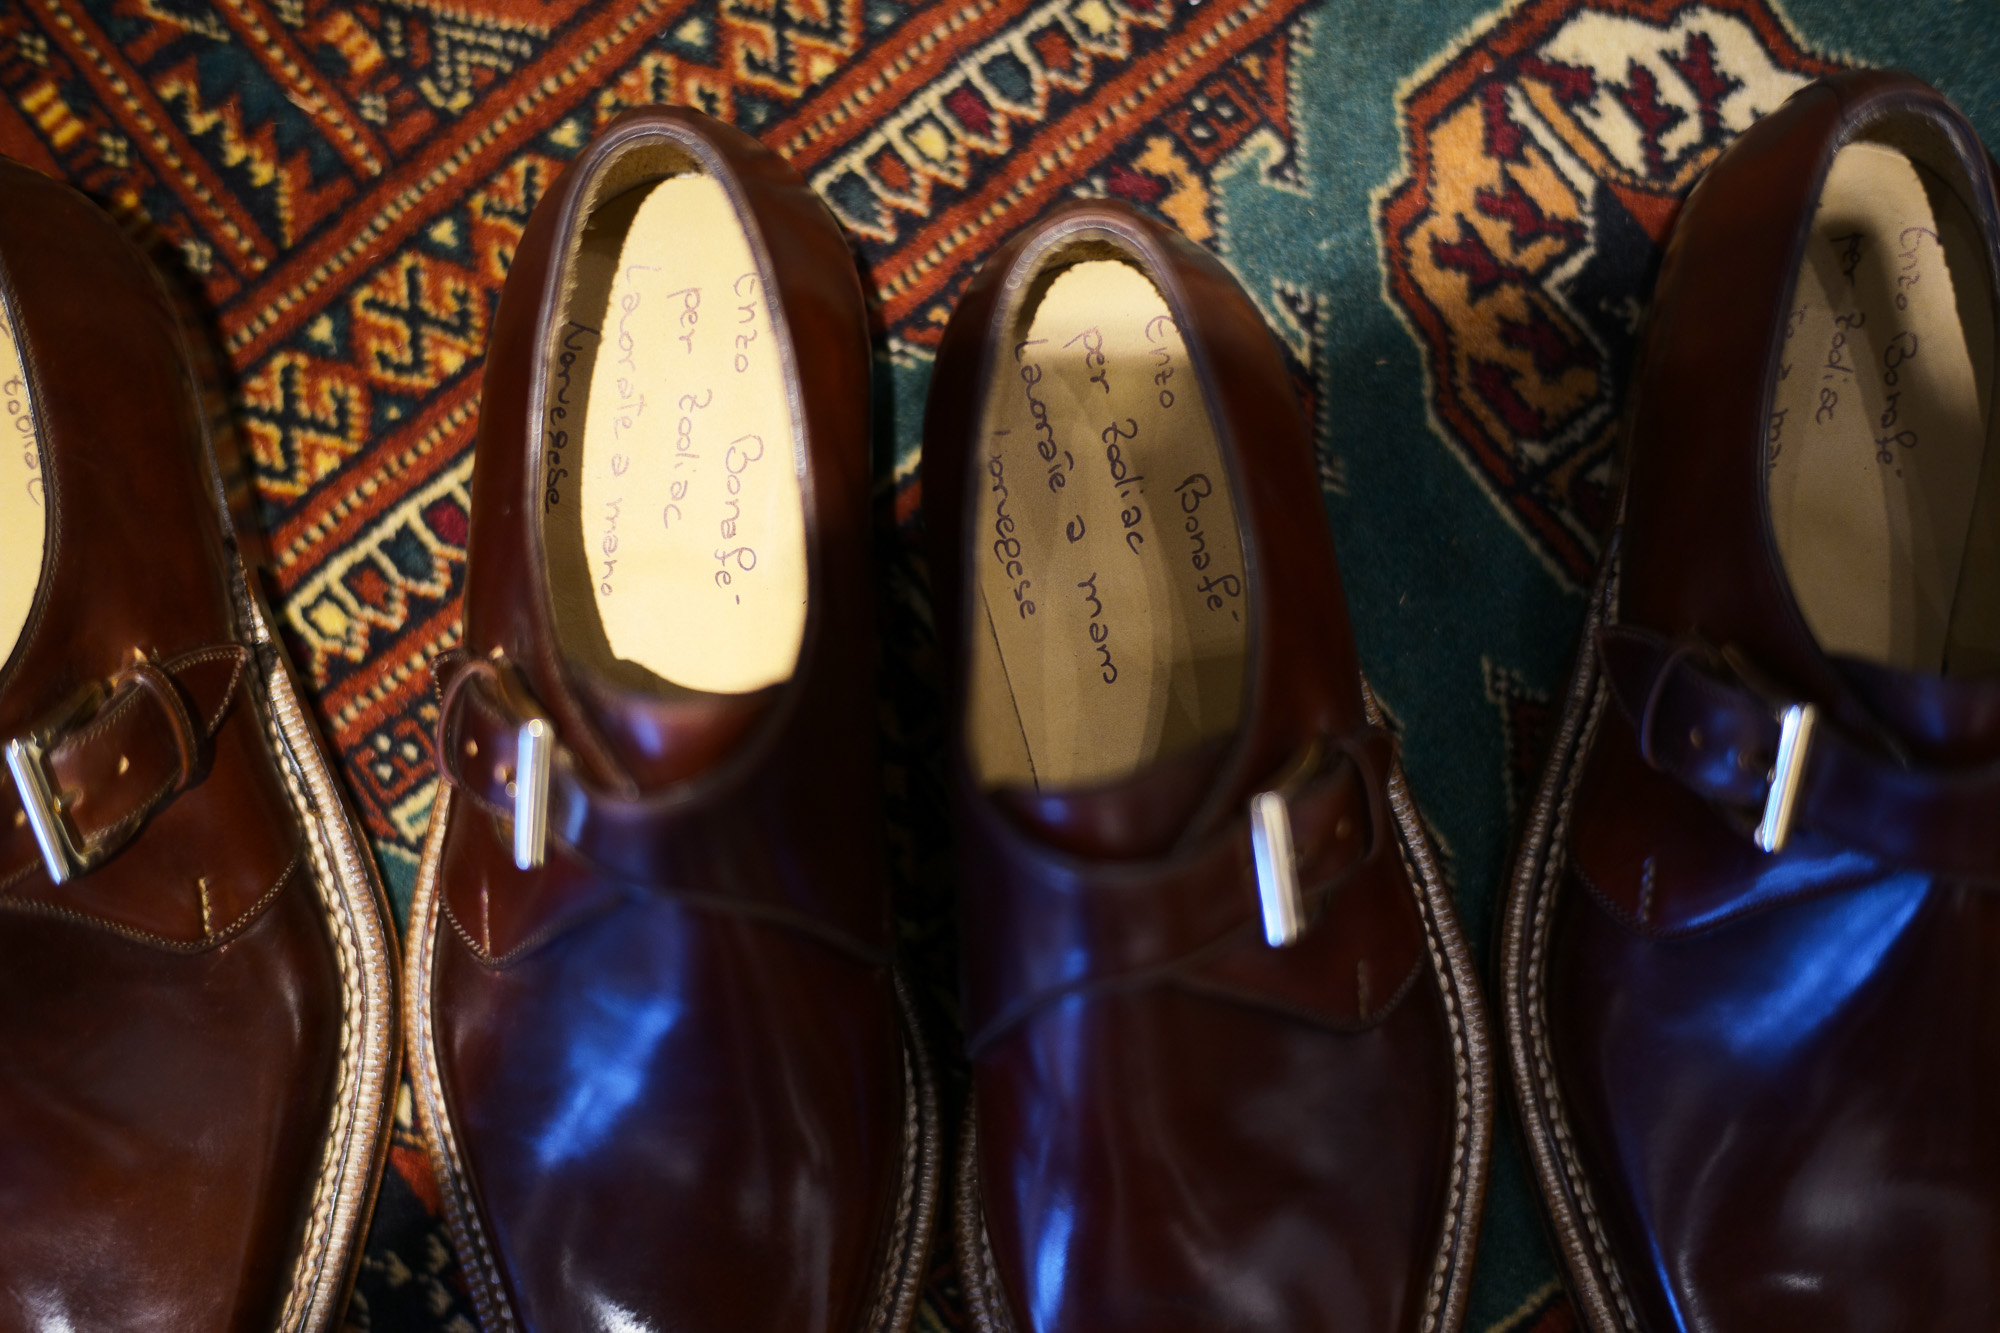 ENZO BONAFE (エンツォボナフェ) 【ART.3721】Single Monk Strap Shoes シングルモンクストラップシューズ CORDOVAN コードバン ノルベジェーゼ製法 ドレスシューズ No.4(#4) made in italy (イタリア製) 2018 春夏新作　愛知 名古屋 Alto e Diritto アルト エ デリット enzobonafe コードバン no4 ナンバーフォー